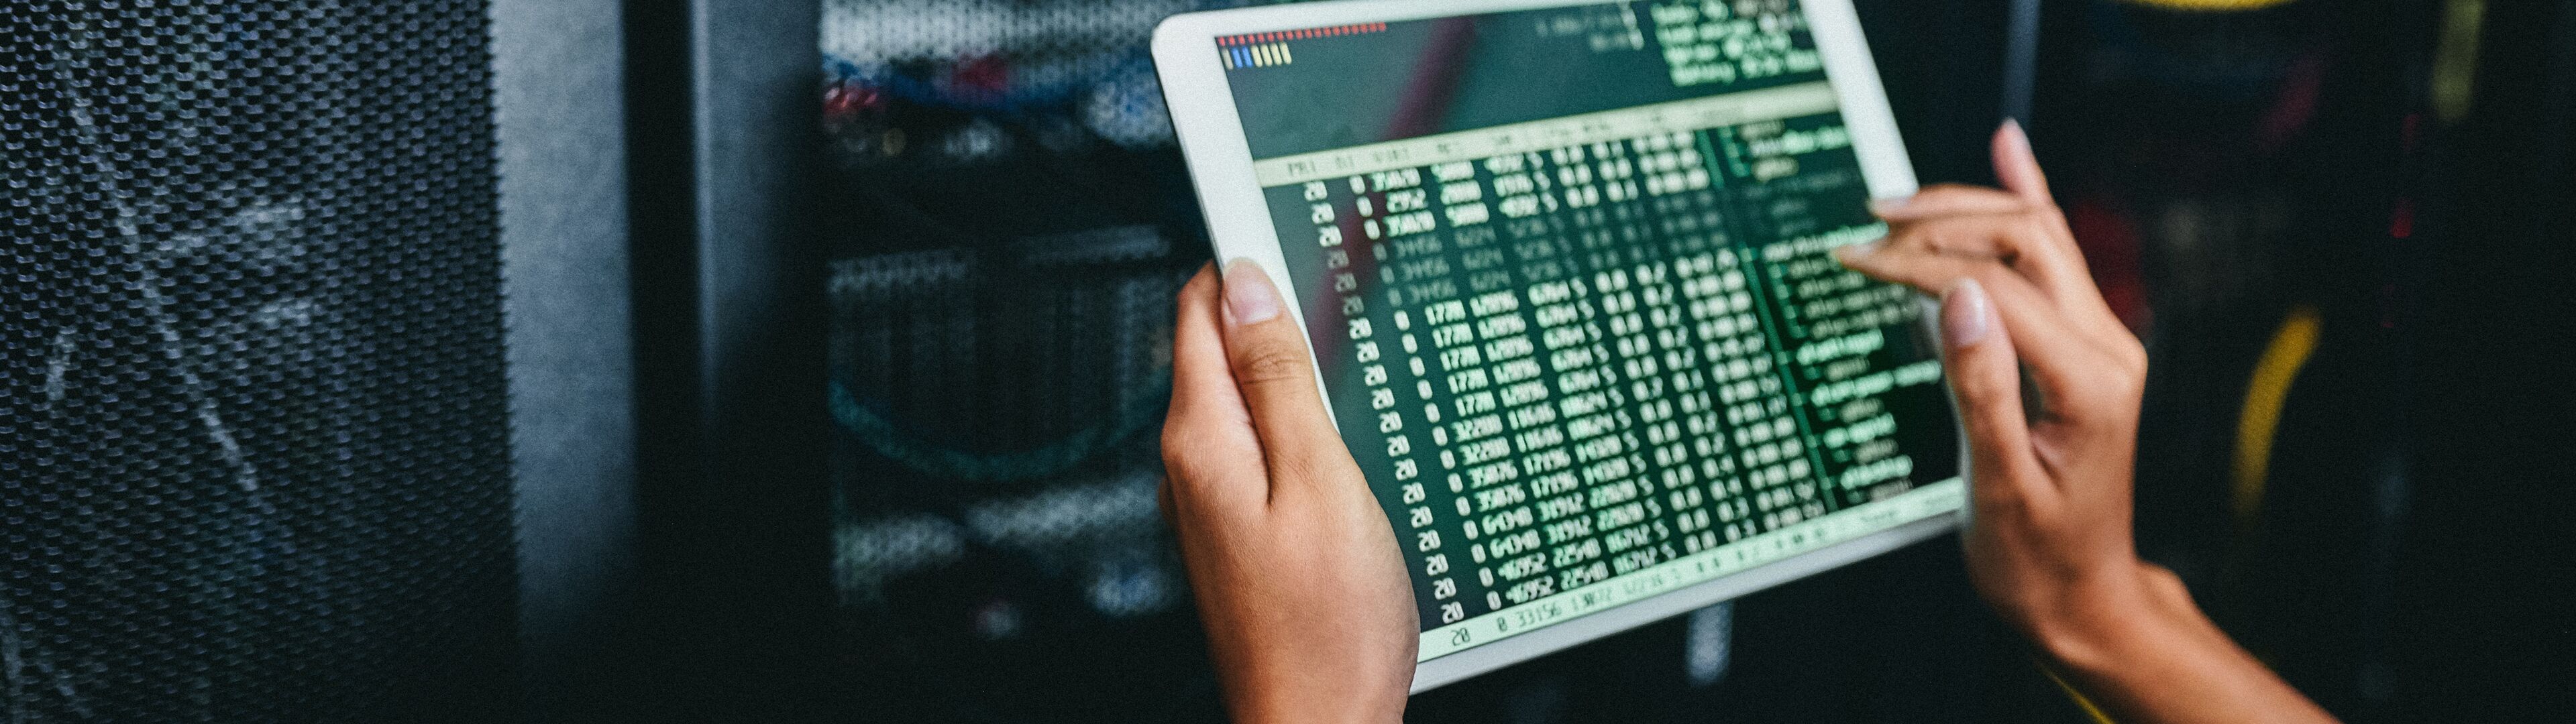 Les mains d'un technicien surveillent l'activité et le diagnostic du réseau sur une tablette numérique, avec une armoire de serveur en arrière-plan.